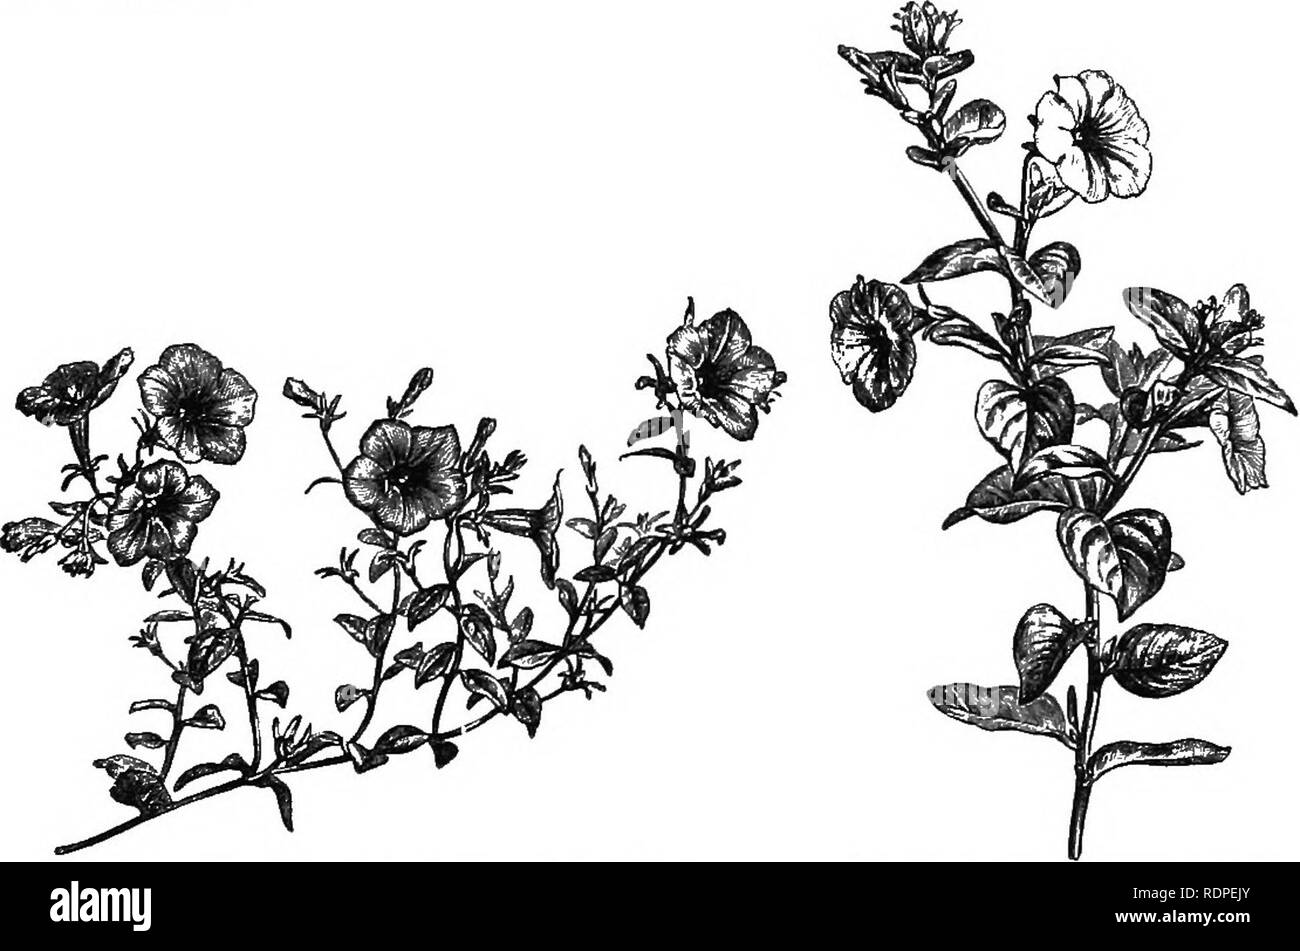 . Handbuch der Hardy Bäumen, Sträuchern und krautigen Pflanzen... Auf der Grundlage der Französischen Arbeit der Firma Decaisne und Naudin... mit dem Titel 'Manuel de l'amateur des Jardins", und darunter das original Holzschnitten von Riocreux und Leblanc. Pflanzen, Zierpflanzen. Solanacece - Stechapfel. 331, D. StramoniuTn (Thorn-Apple), wird gelegentlich in Abfällen Orte in diesem Land als waif Anbau gefunden. Dies hat große weiße Blüten, aber es gibt eine Sorte mit violetten Blüten Tdtula genannt. Der generische Name ist eine Abwandlung des Arabischen Tatorah. 1. D. ceratocaiila (Abb. 180) ist eine Verbreitung oder decumbent jährliche mit Th Stockfoto